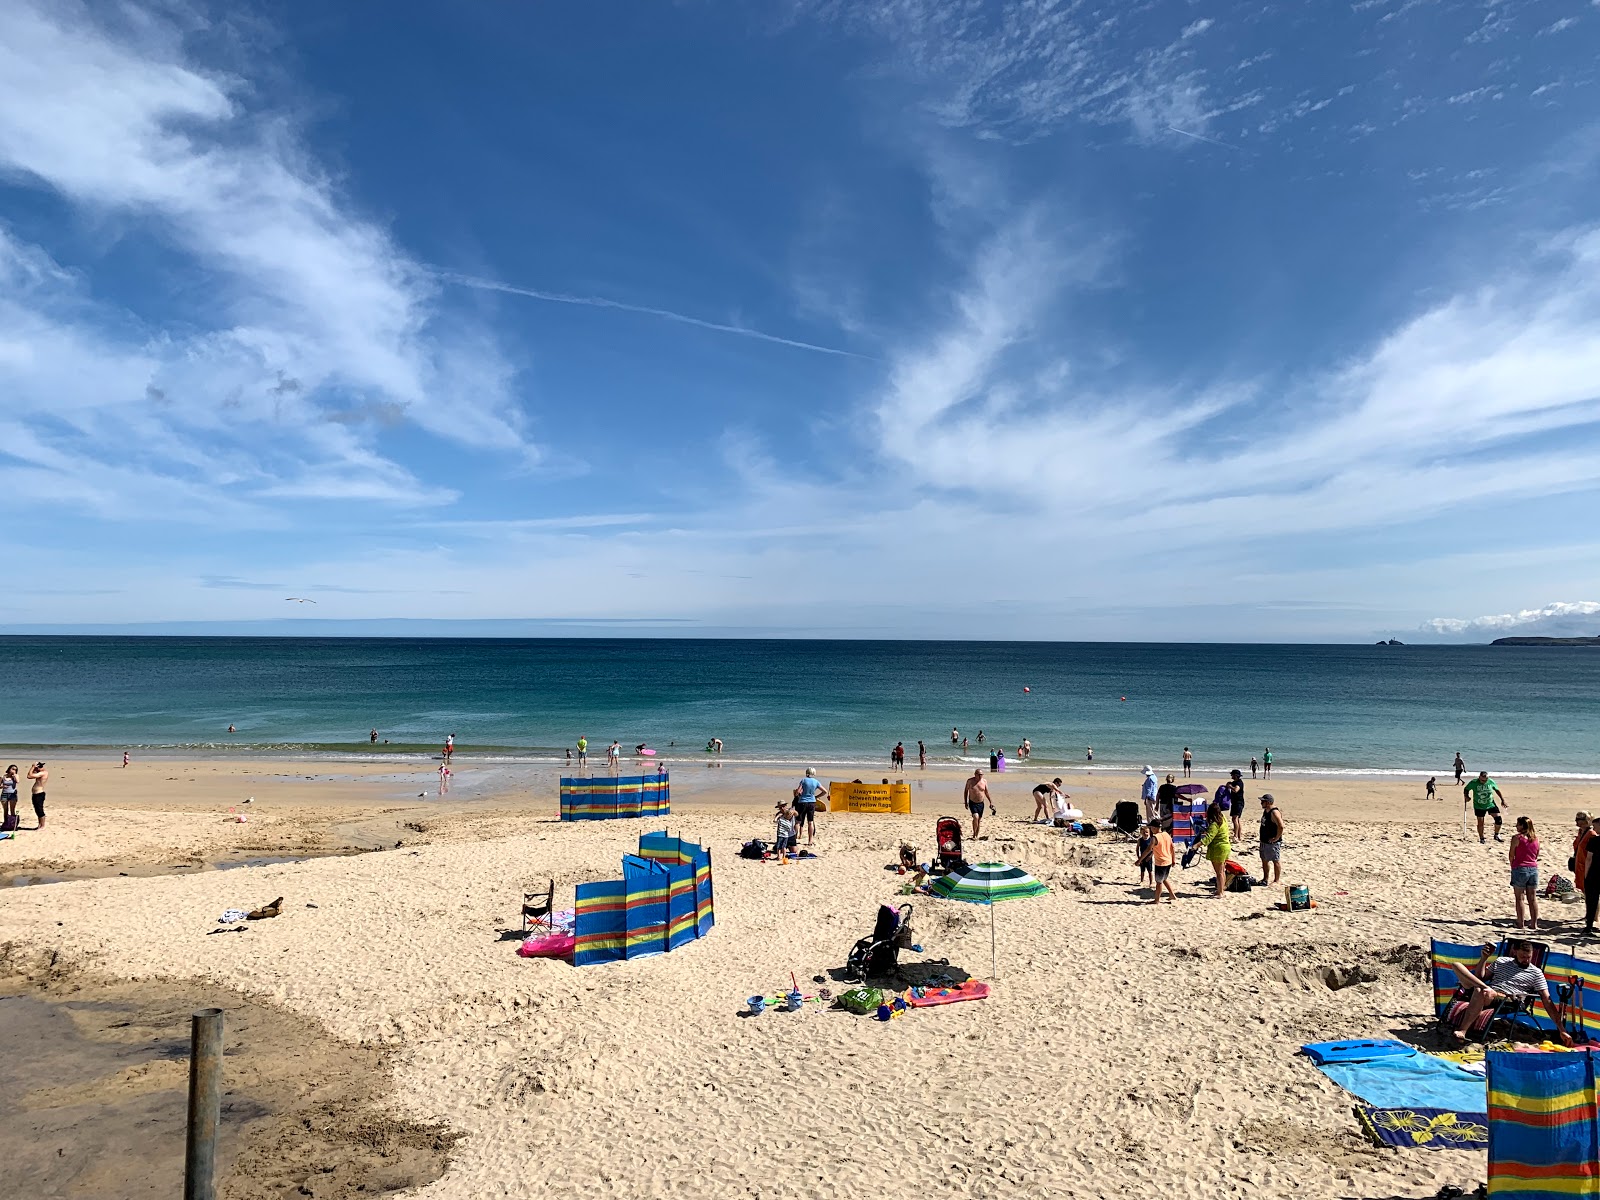 Carbis Bay beach'in fotoğrafı geniş plaj ile birlikte